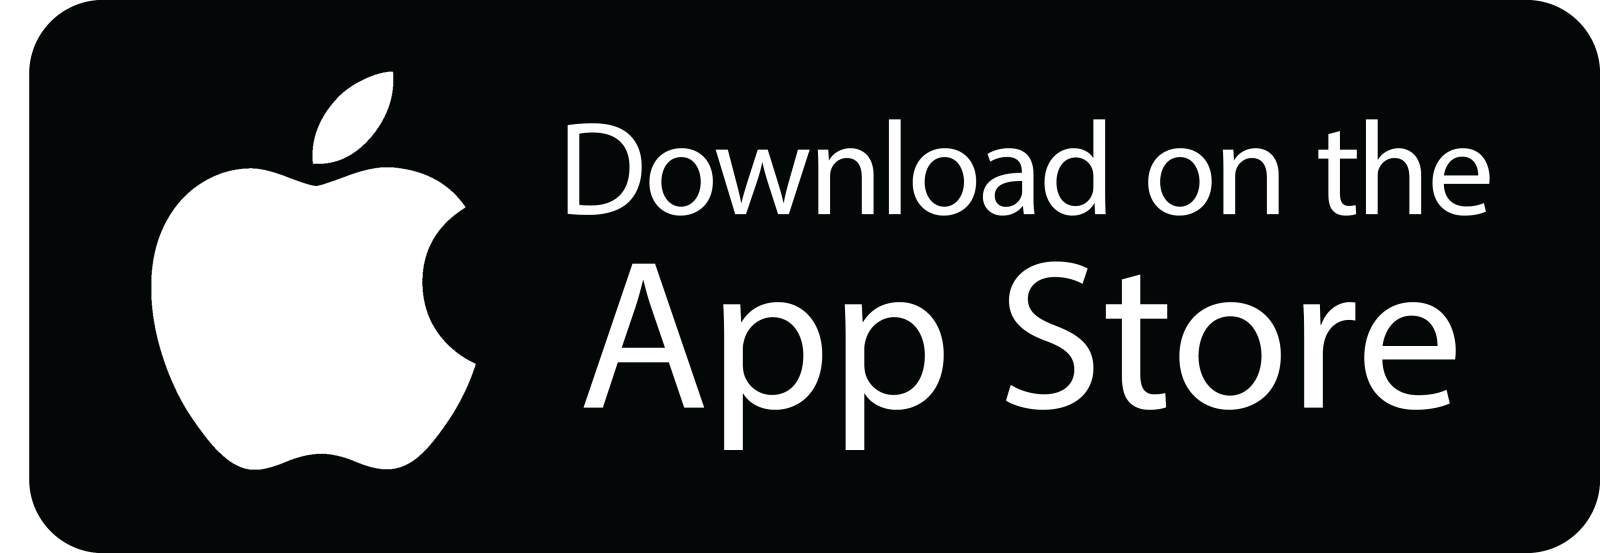 cicekfilosu app store